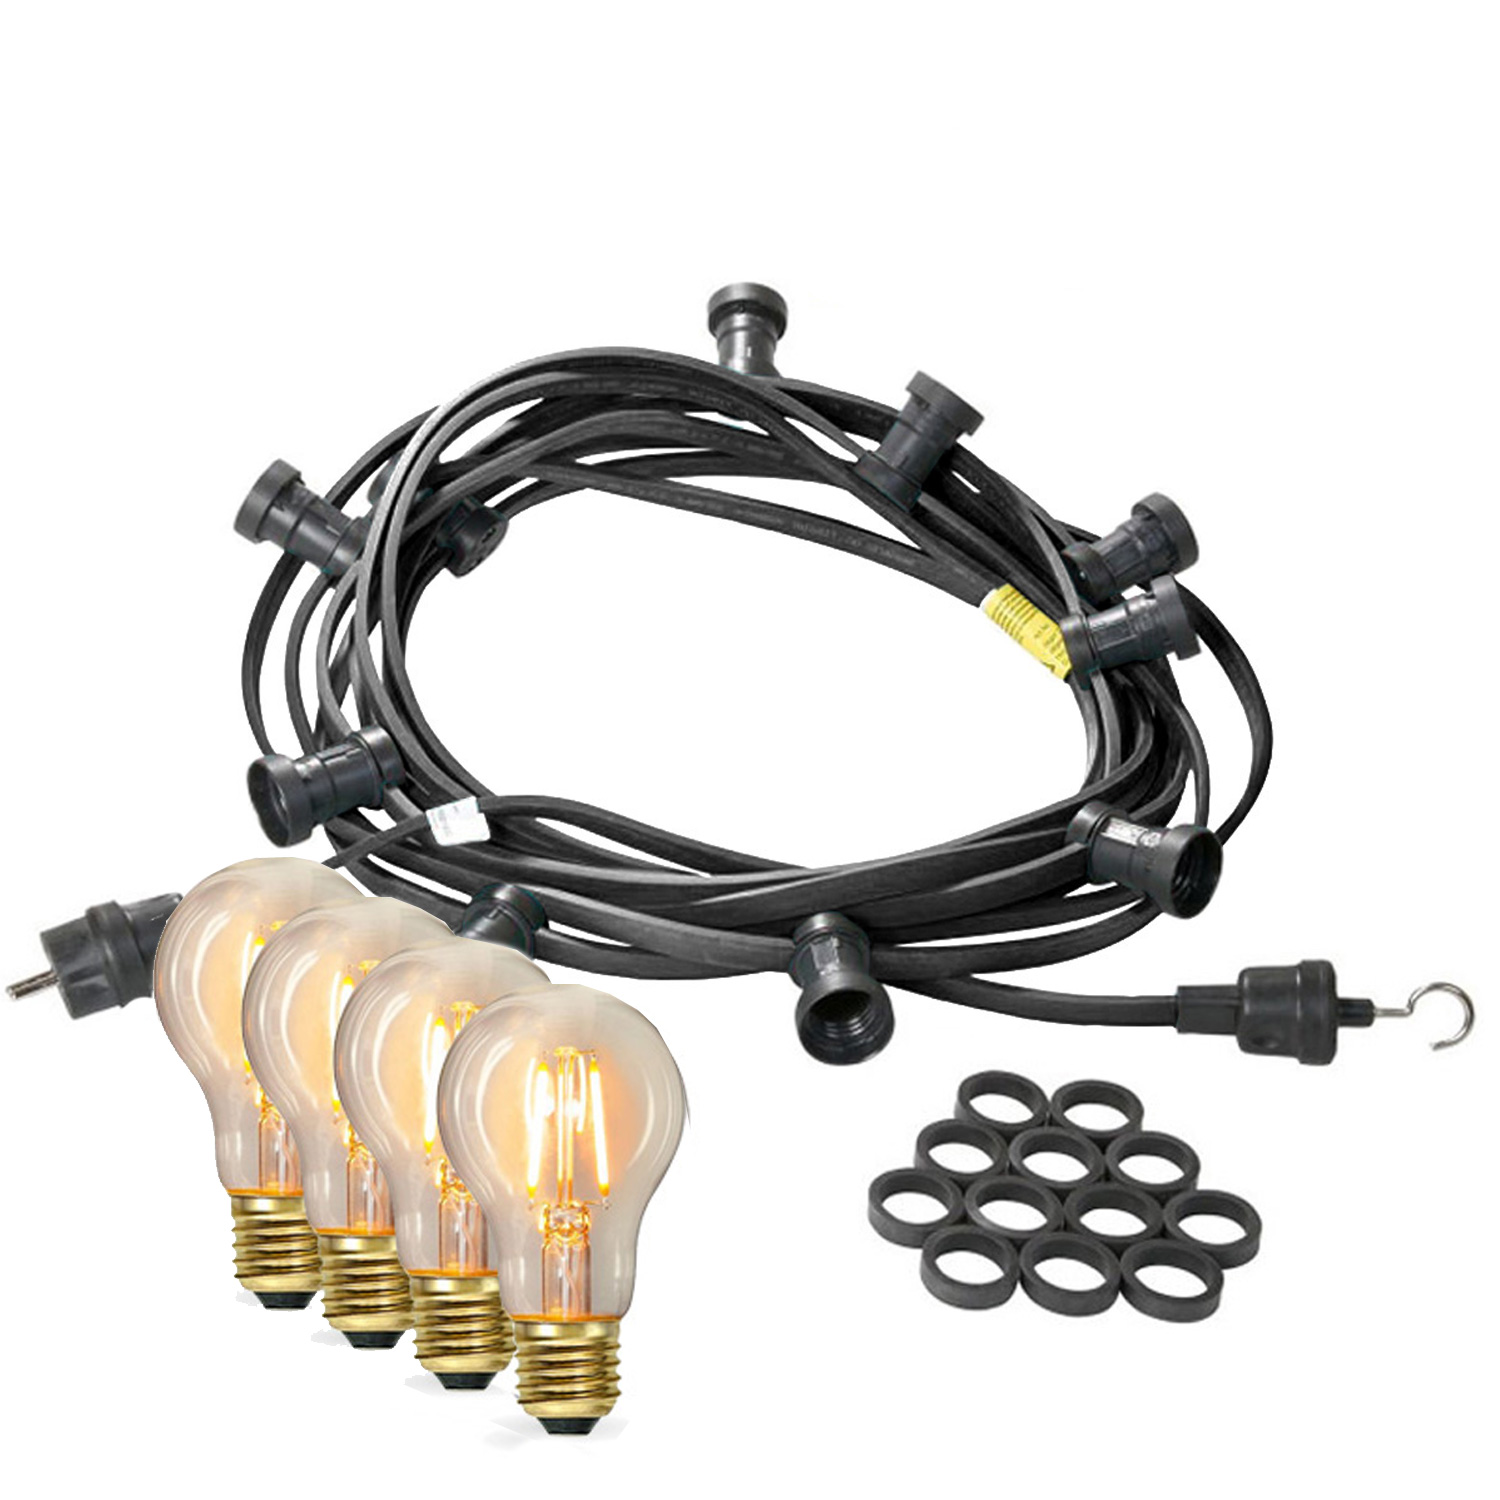 Illu-/Partylichterkette 20m - Außenlichterkette - Made in Germany - 30 x Edison LED Filamentlampen